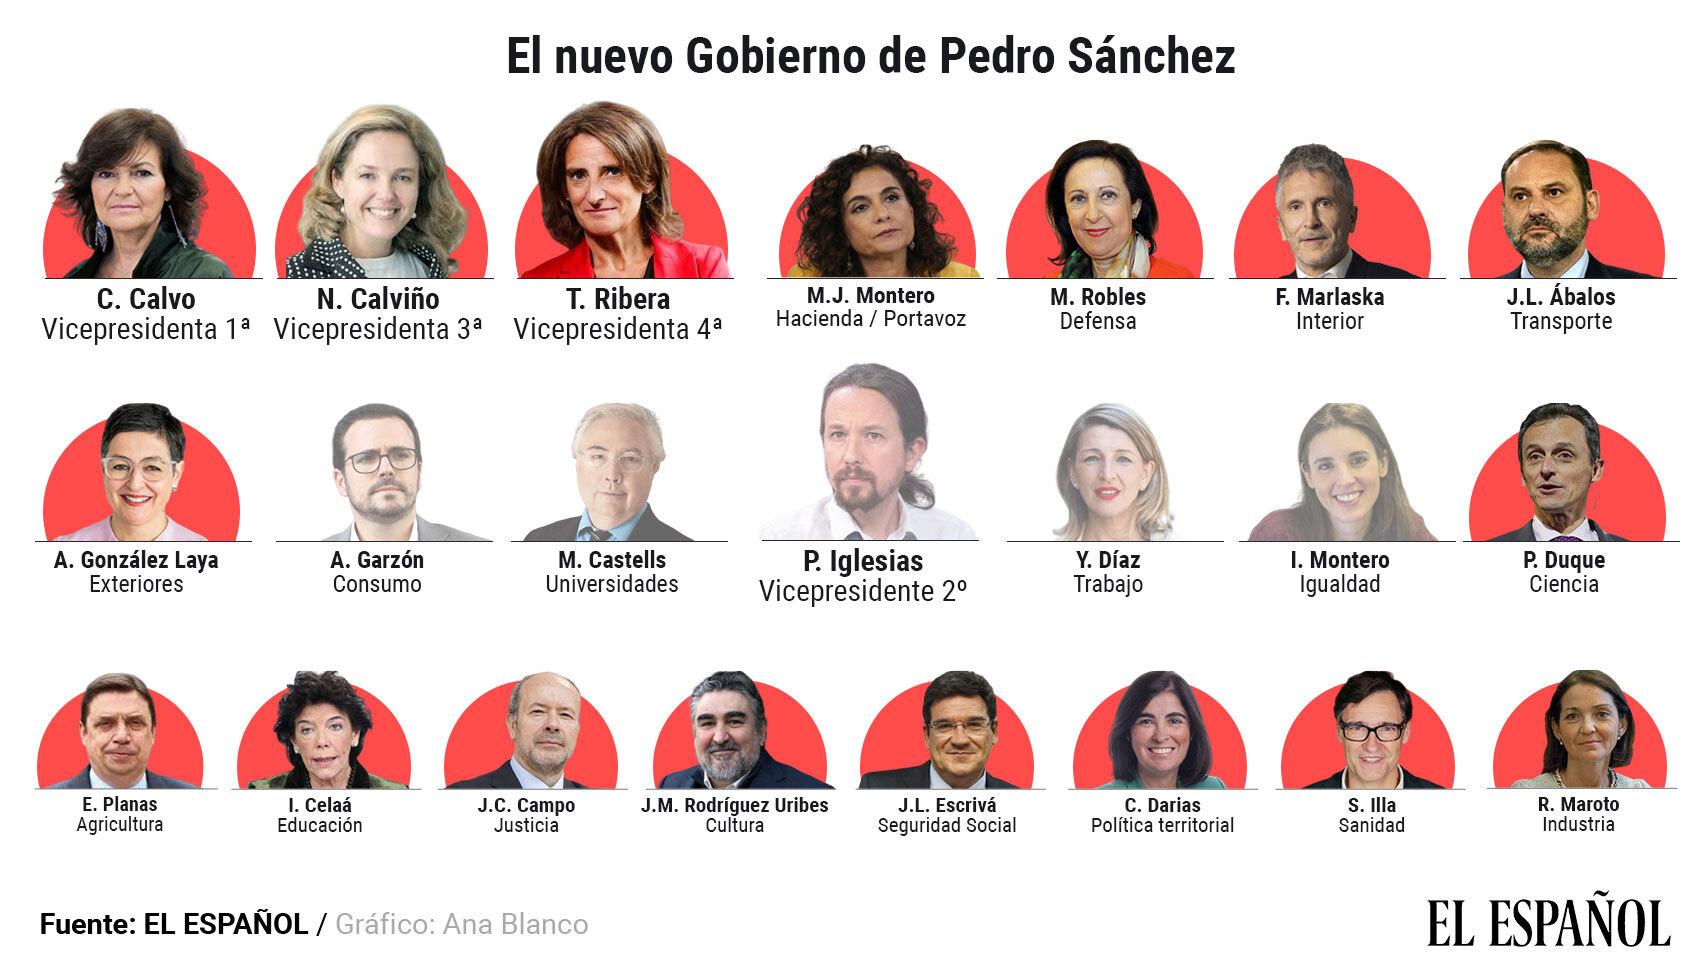 Gráfico con los miembros del nuevo Gobierno que Sánchez anunciará formalmente este domingo.